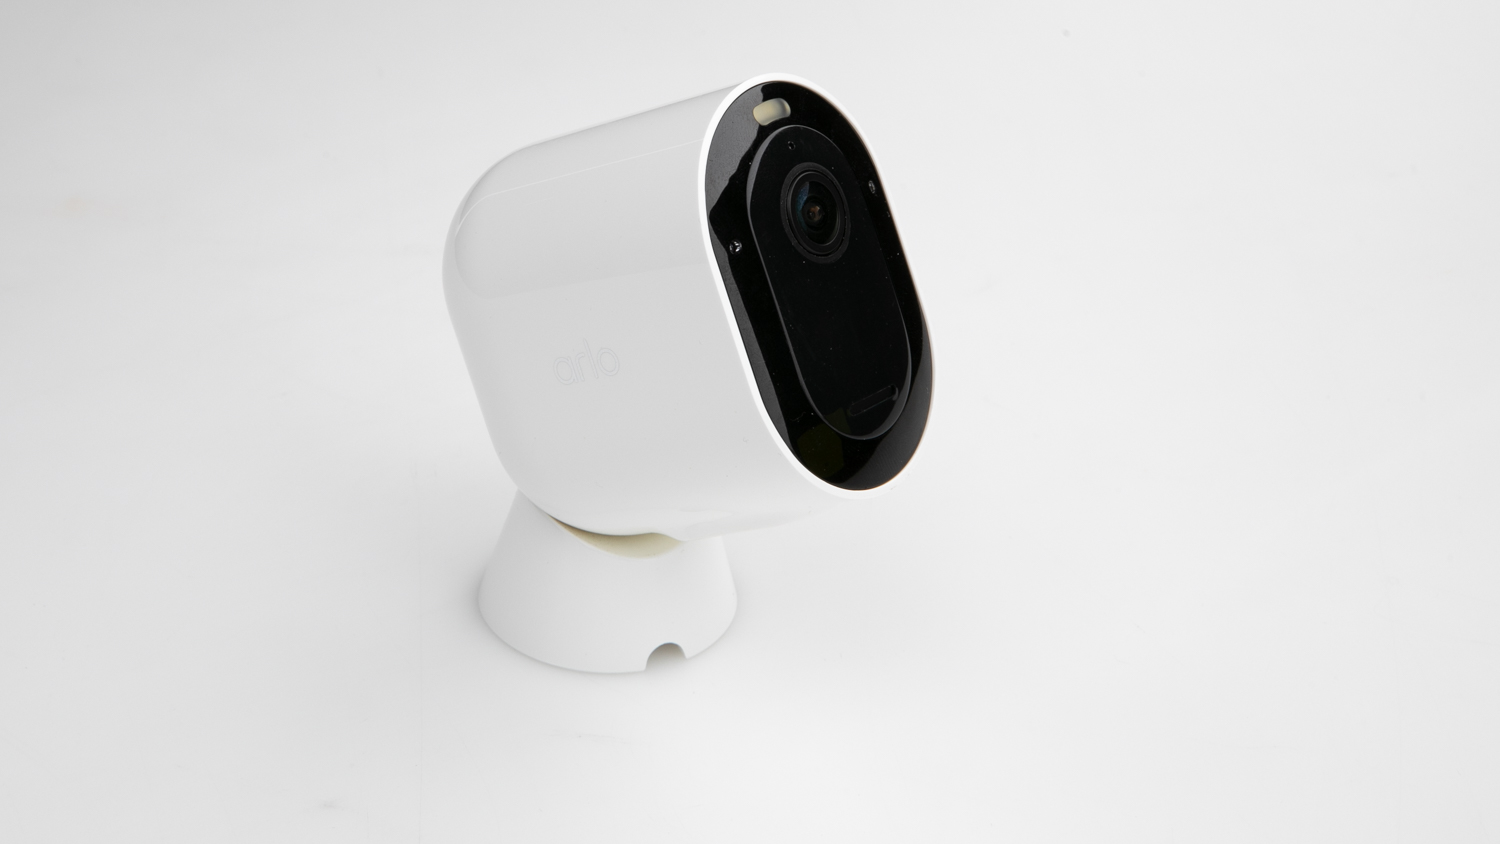 Arlo Pro 4 Spotlight Camera (VMC4050P-100AUS) carousel image